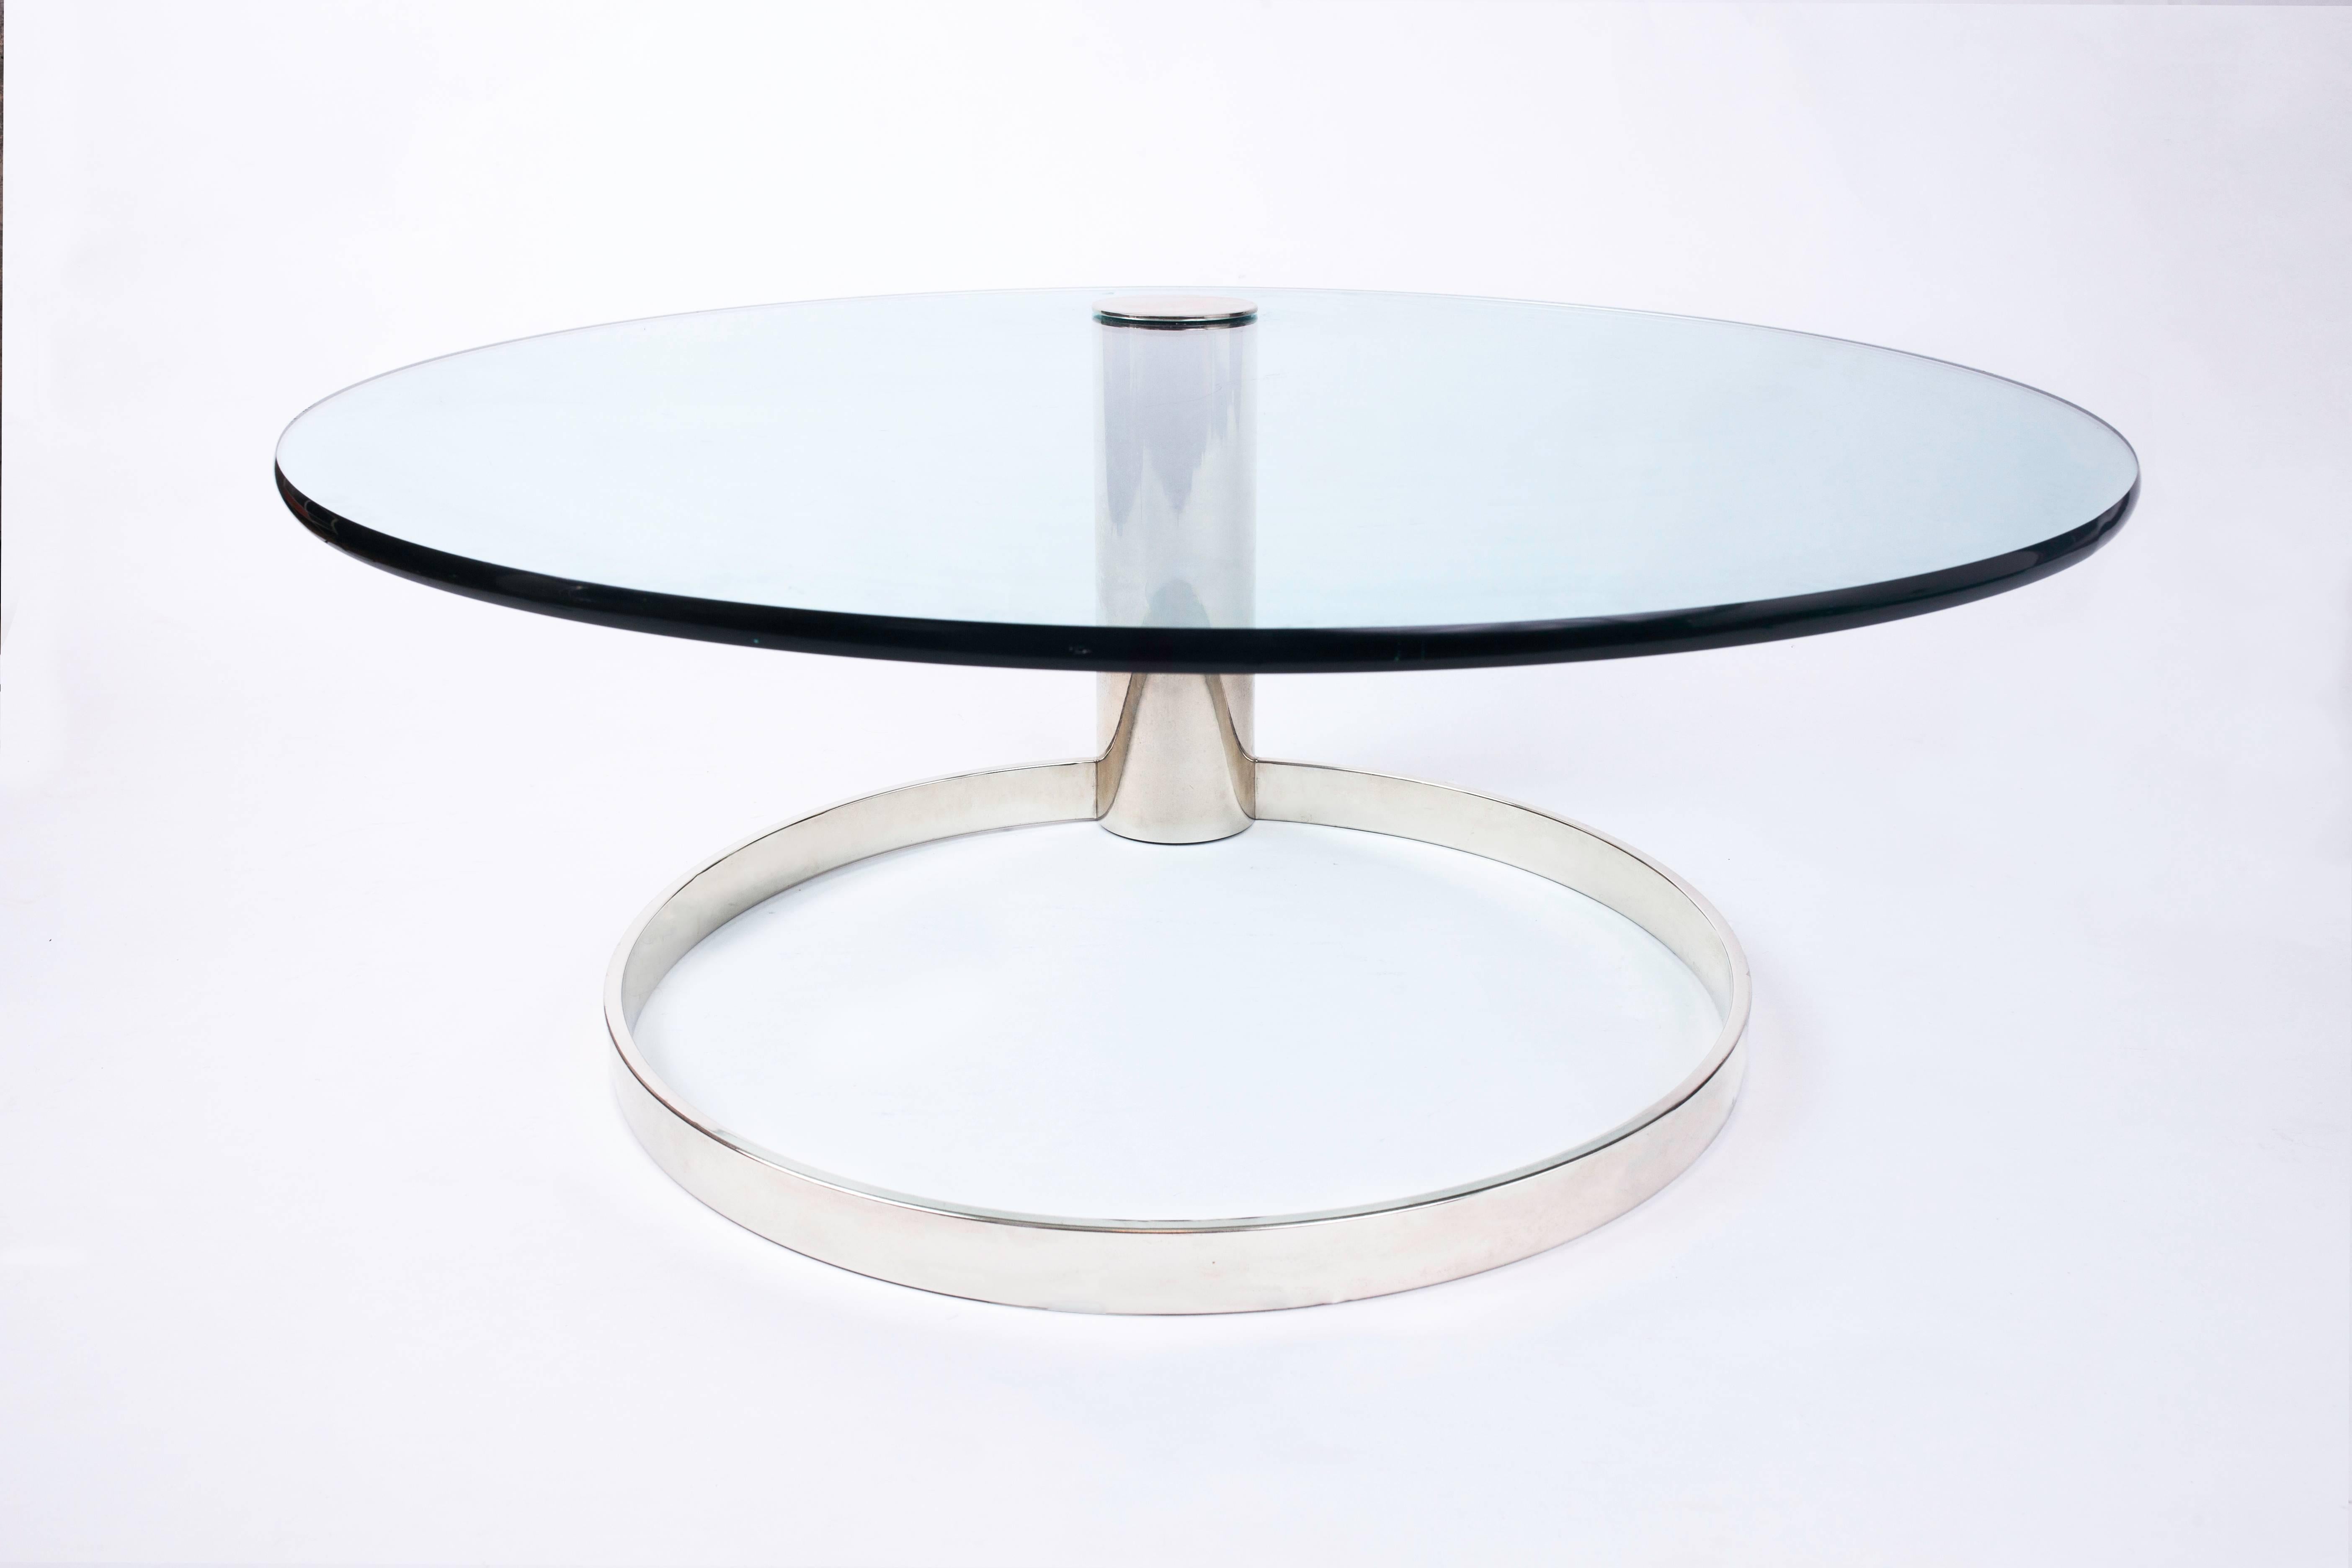 Schwebender, runder Couchtisch aus Glas und Chrom von Leon Rosen für Pace mit einer dynamisch auskragenden Platte, die aus einem architektonischen, ringförmigen Sockel herausragt. Ein geschickt ausbalanciertes, minimalistisches Design.
 